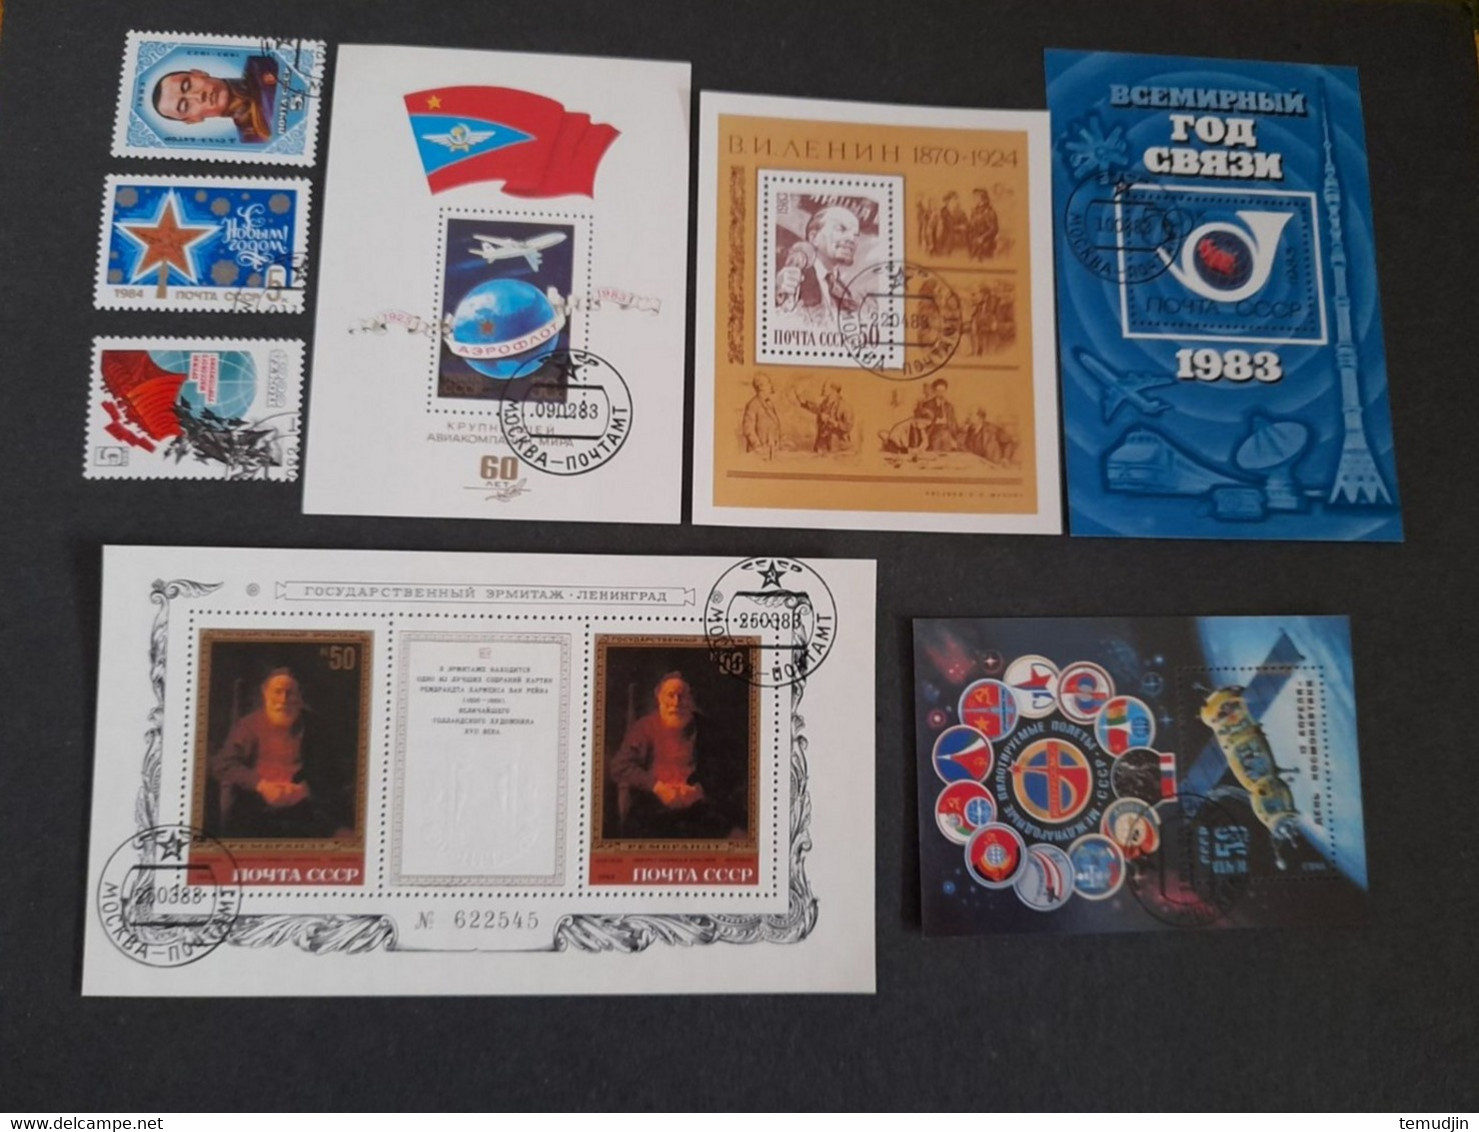 U.R.S.S. 1982 et 1983: 2 années complètes Yv. timbres oblitérés° avec blocs